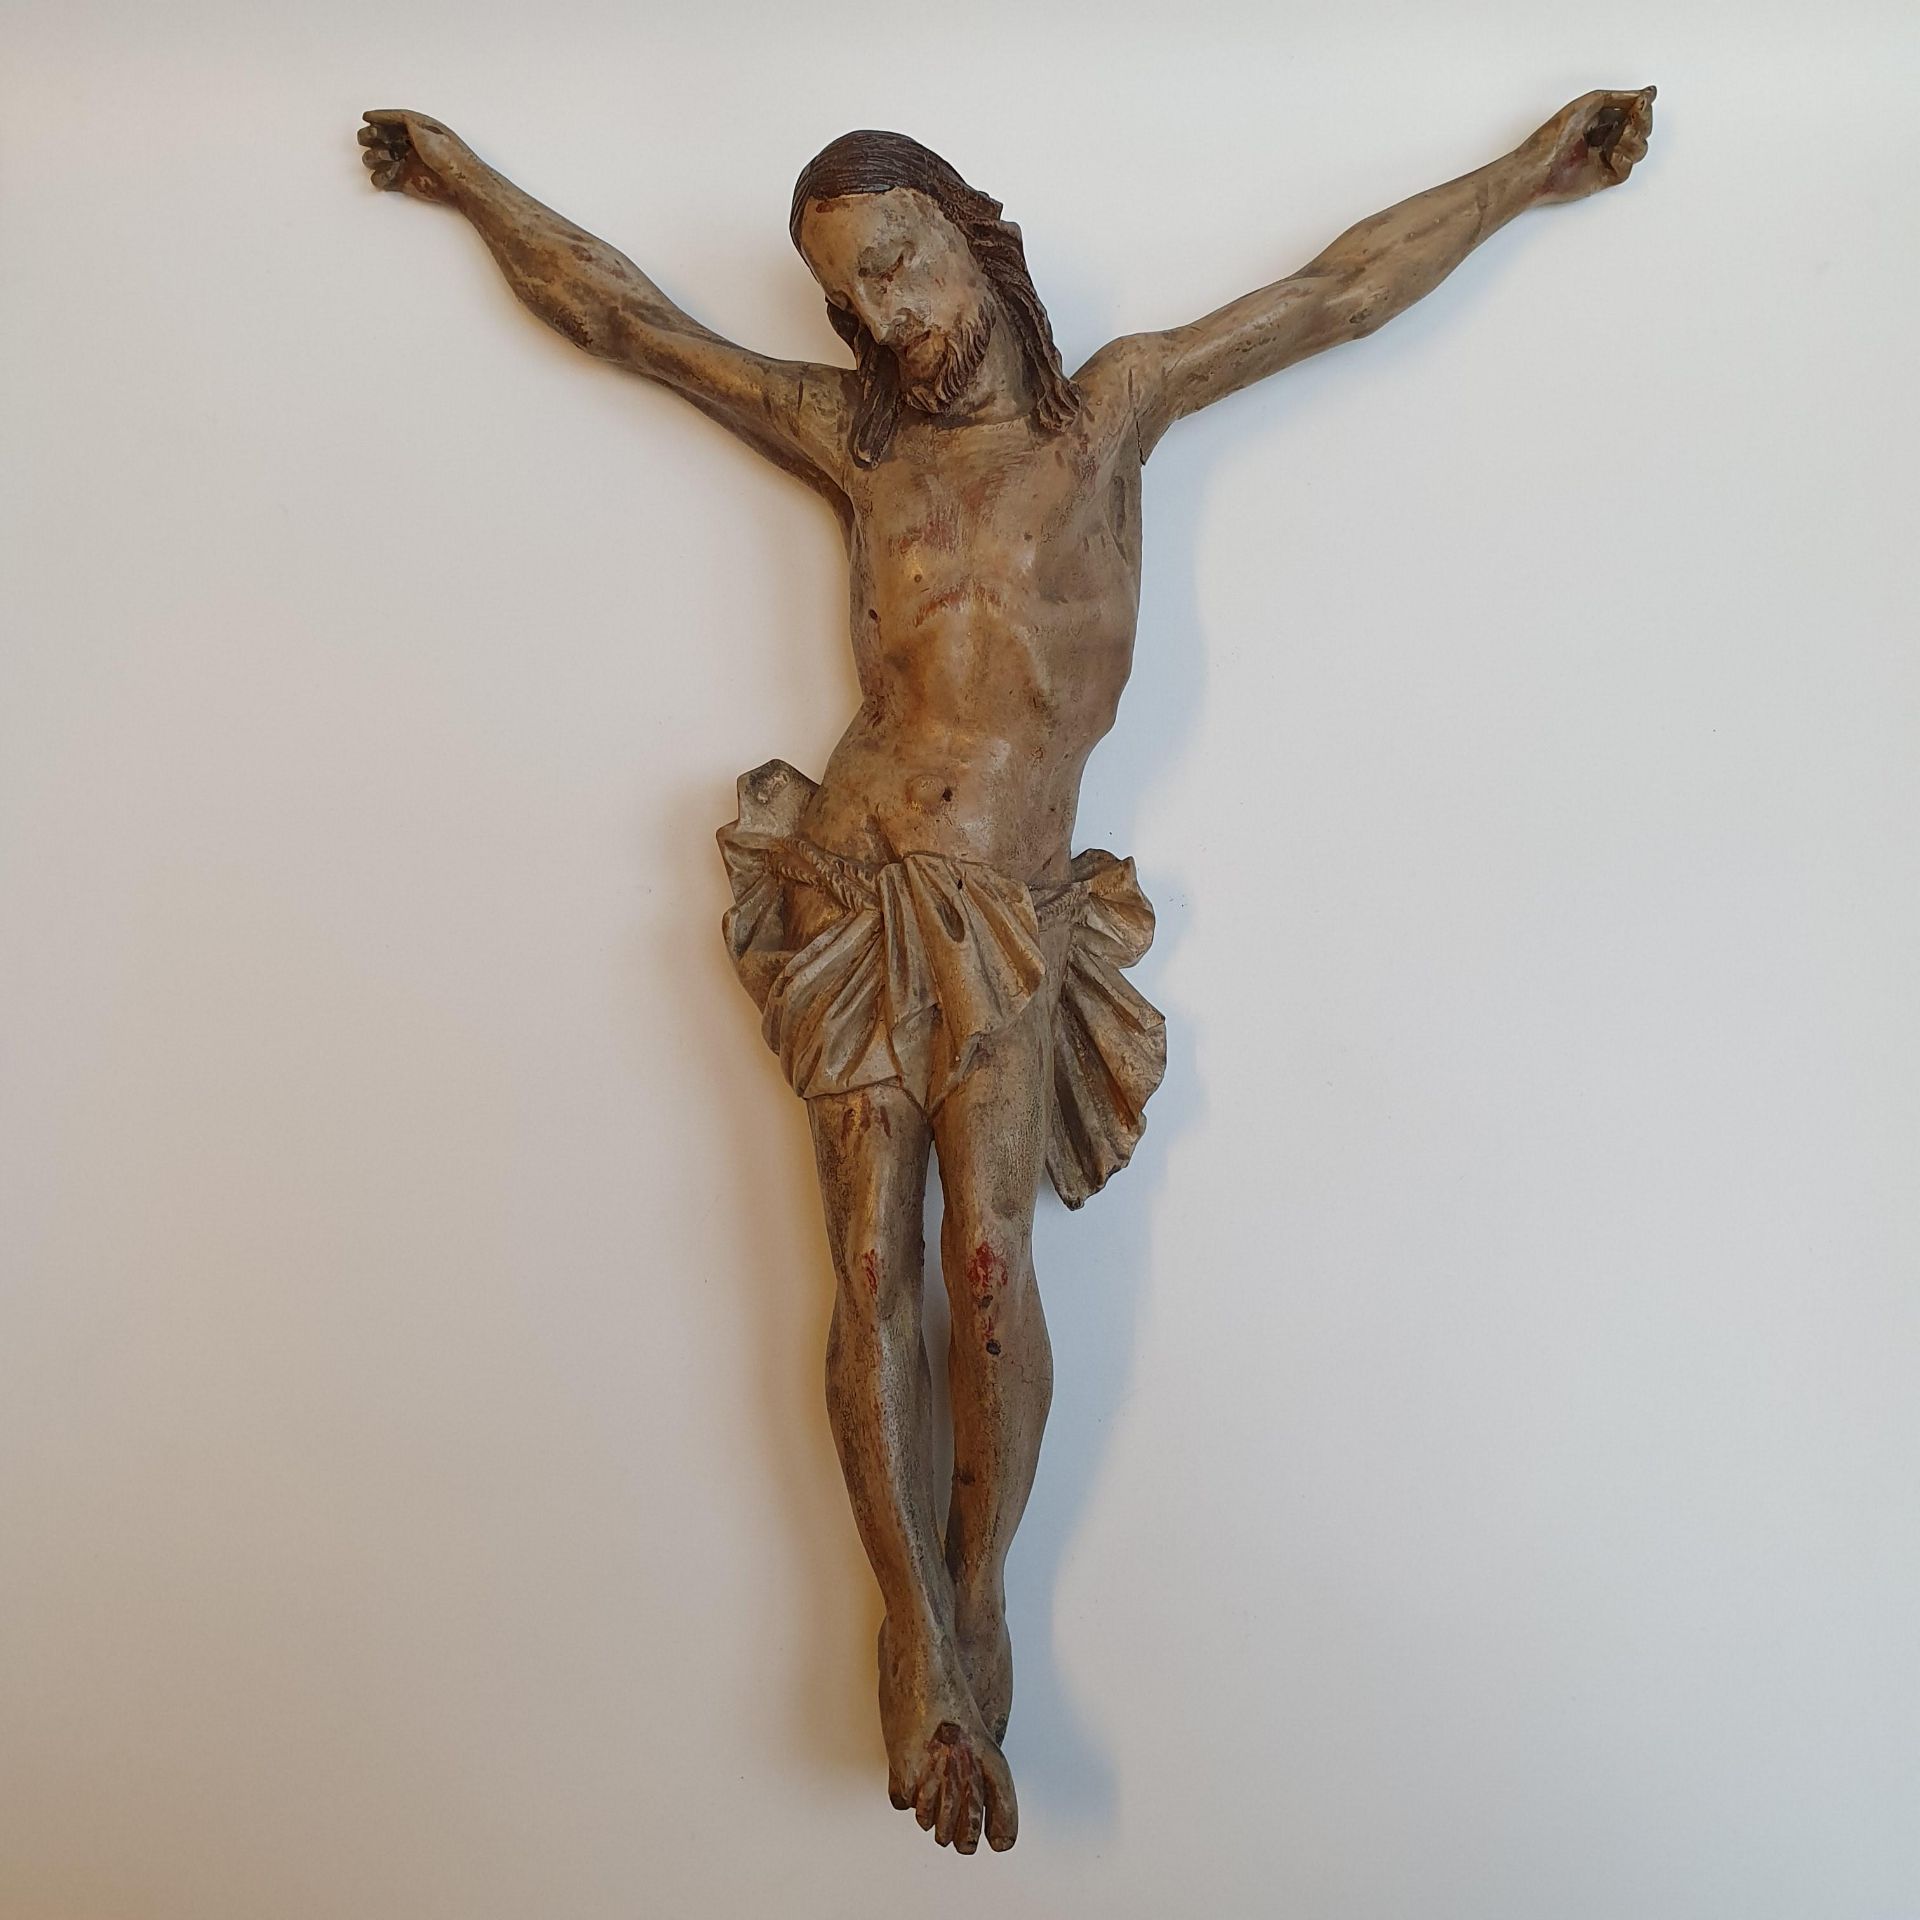 Kruzifix - 19. Jh. oder früher, Holz, vollrund geschnitzt, farbig gefasst, Dars